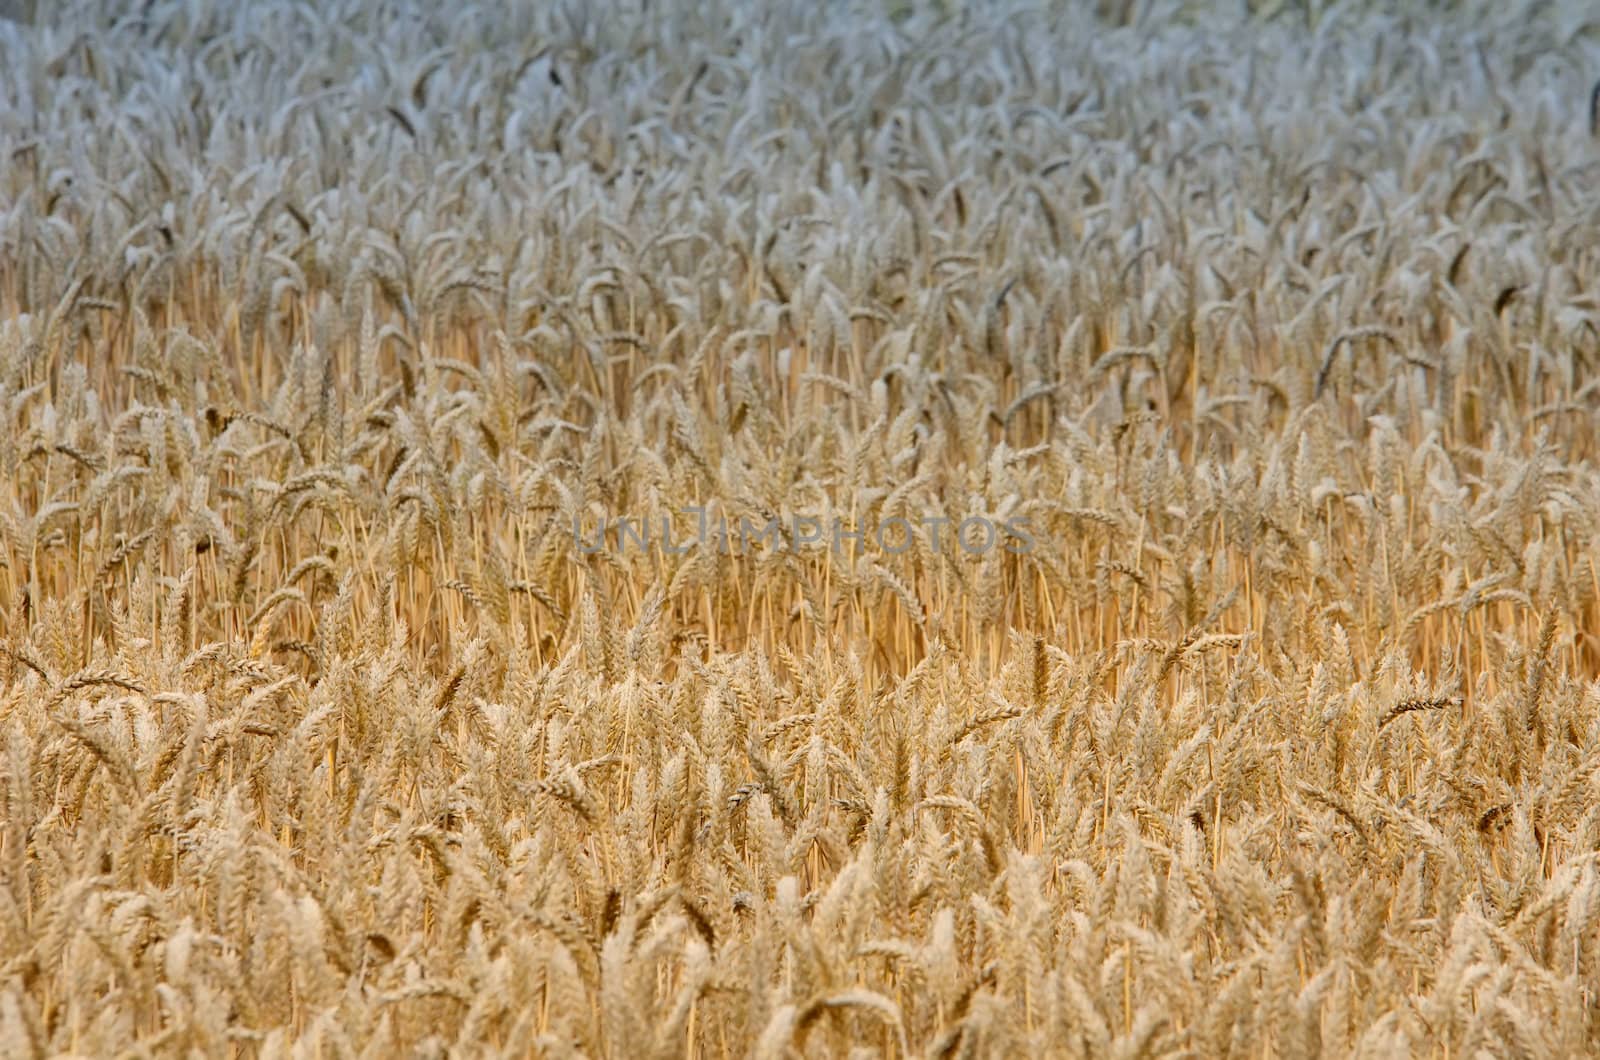 the wheat field by njaj